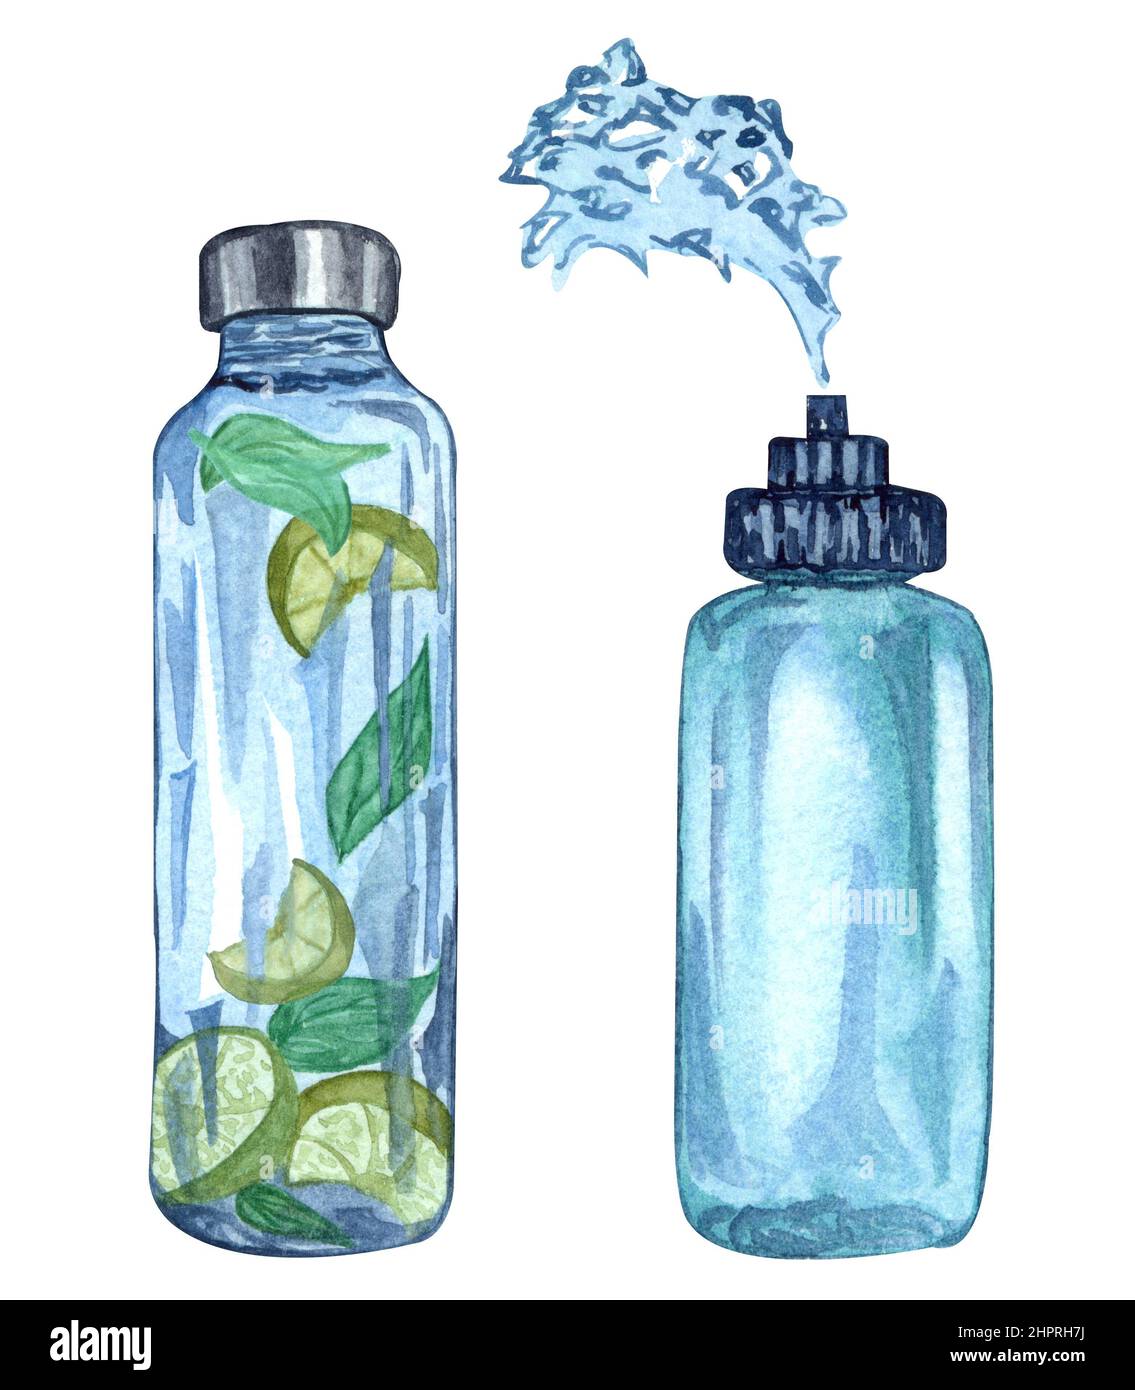 https://c8.alamy.com/compes/2hprh7j/ilustracion-de-acuarela-de-botellas-de-agua-deportiva-biberon-de-fitness-elaborado-a-mano-con-liquido-fresco-con-frutas-y-hierbas-agua-clara-y-salpicaduras-de-agua-2hprh7j.jpg